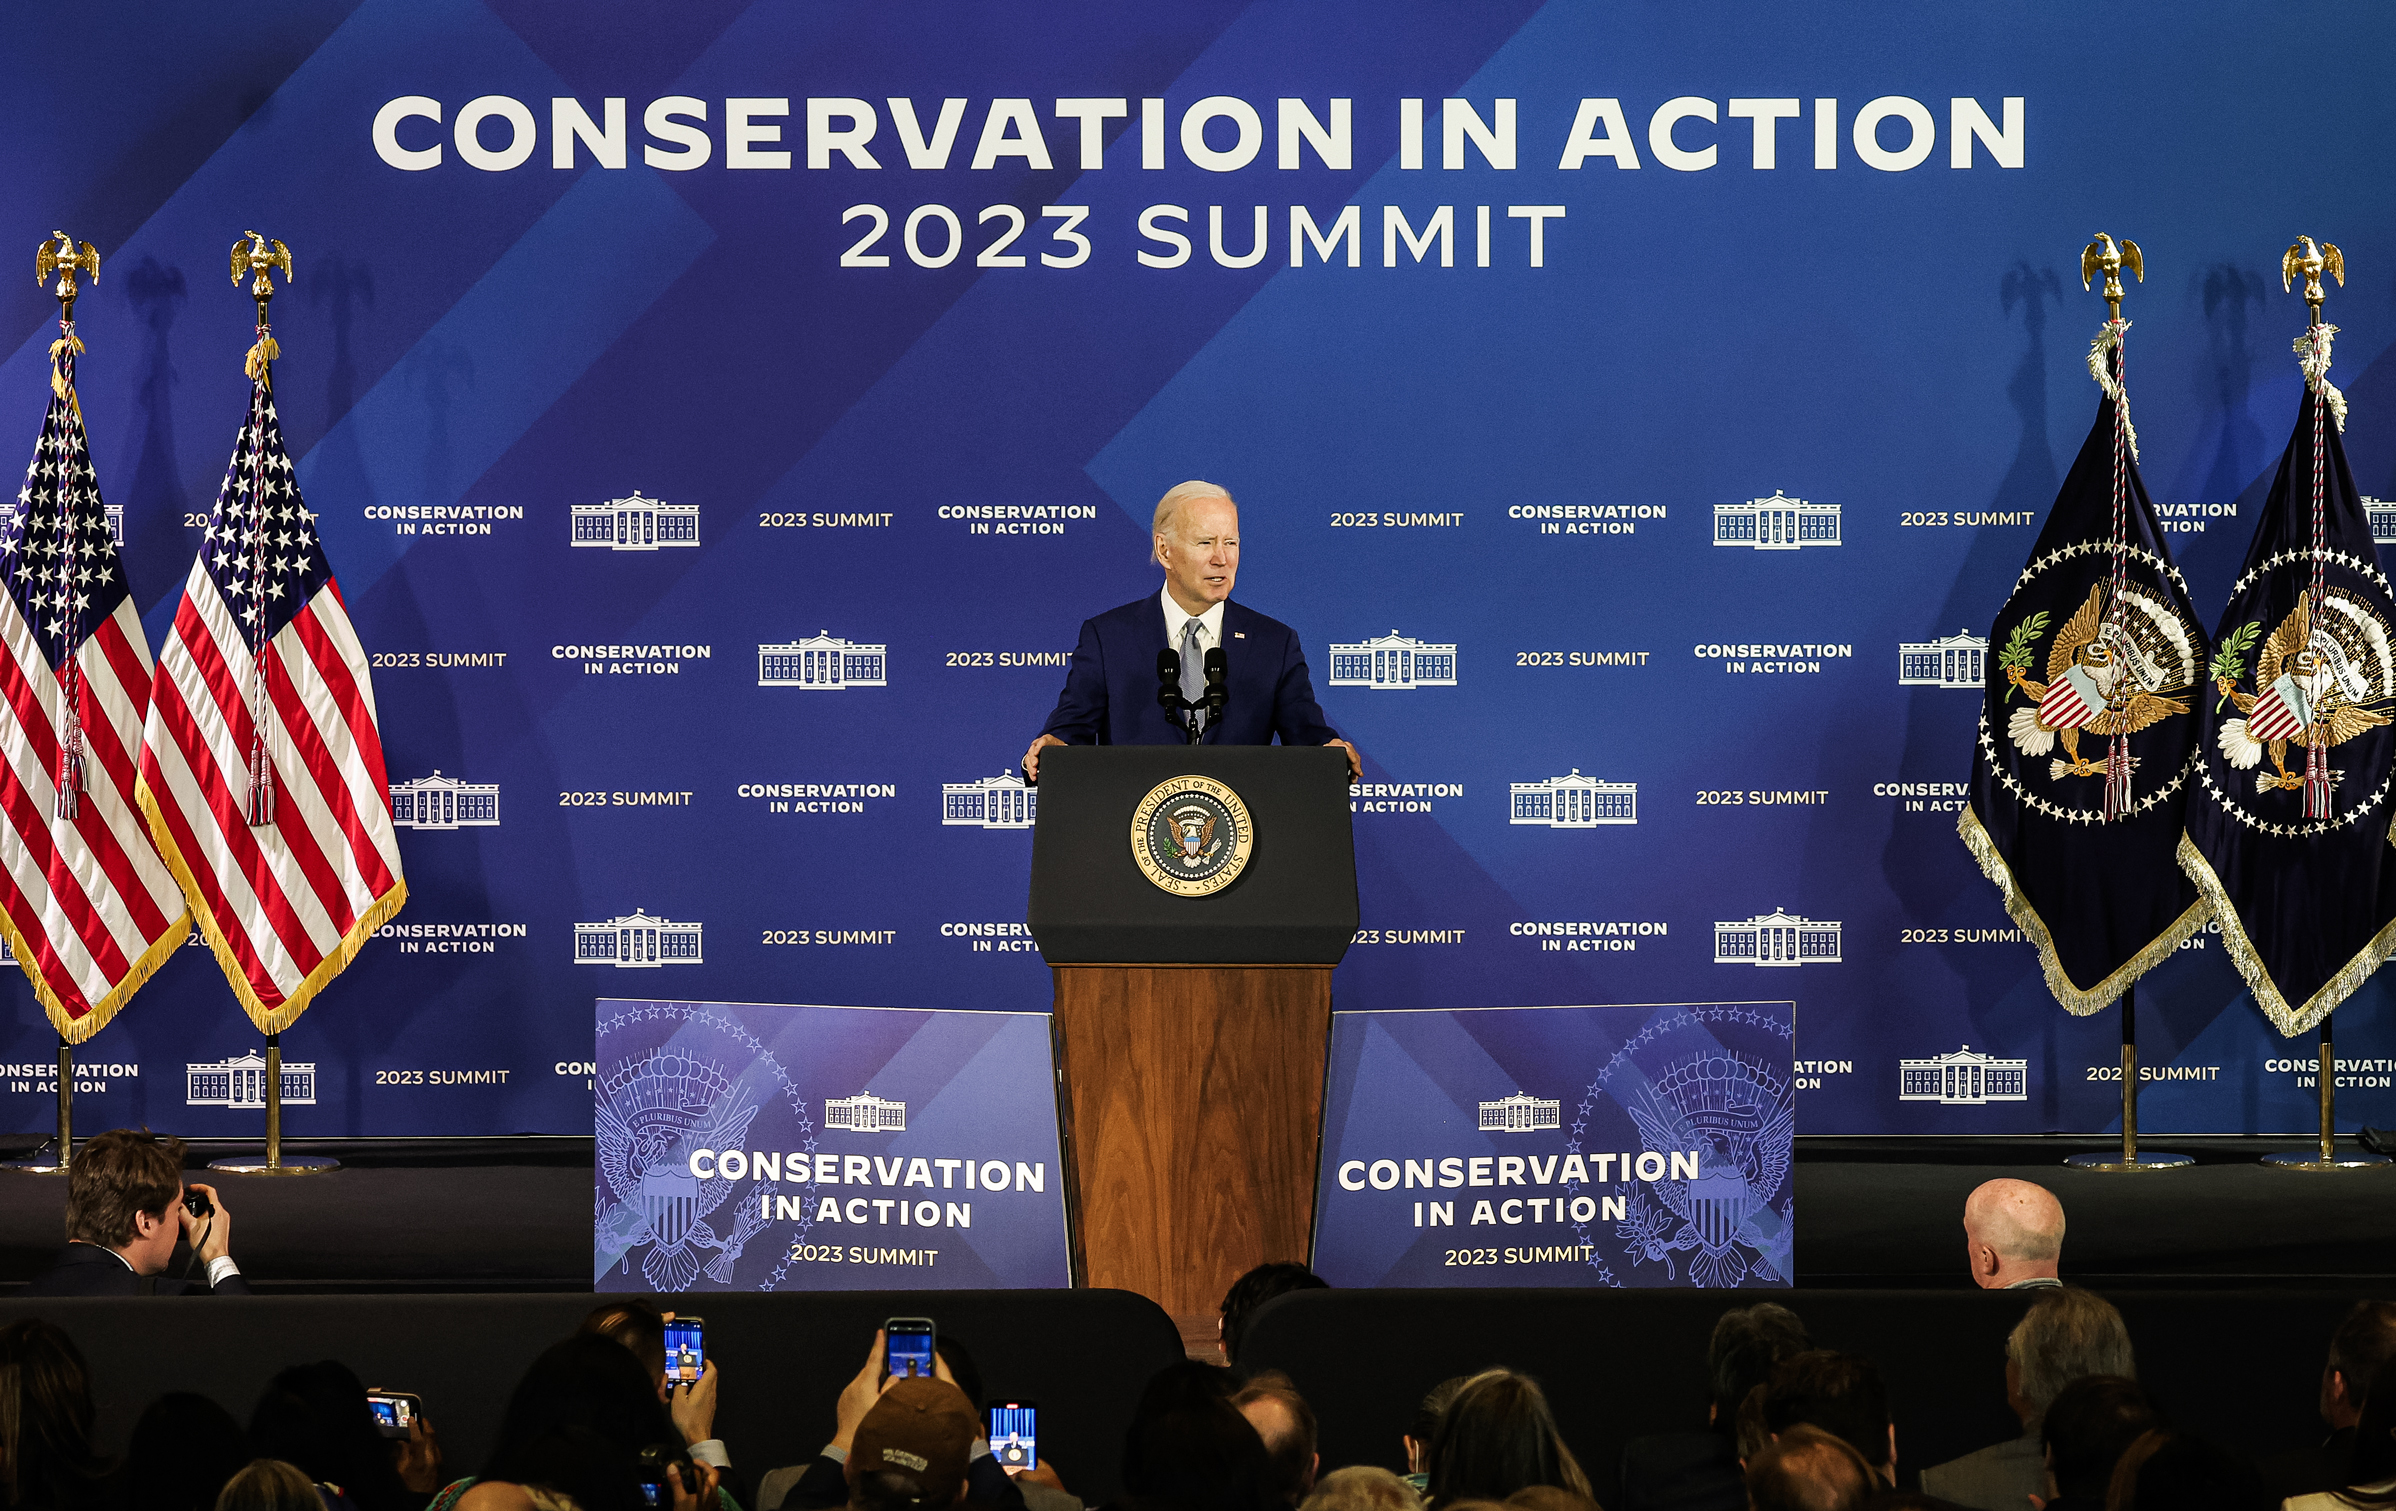 Tổng thống Joe Biden nói tại hội nghị thượng đỉnh về bảo tồn thiên nhiên tại Bộ Nội vụ ở Hoa Thịnh Đốn hôm 21/03/2023. (Ảnh: Kevin Dietsch/Getty Images)